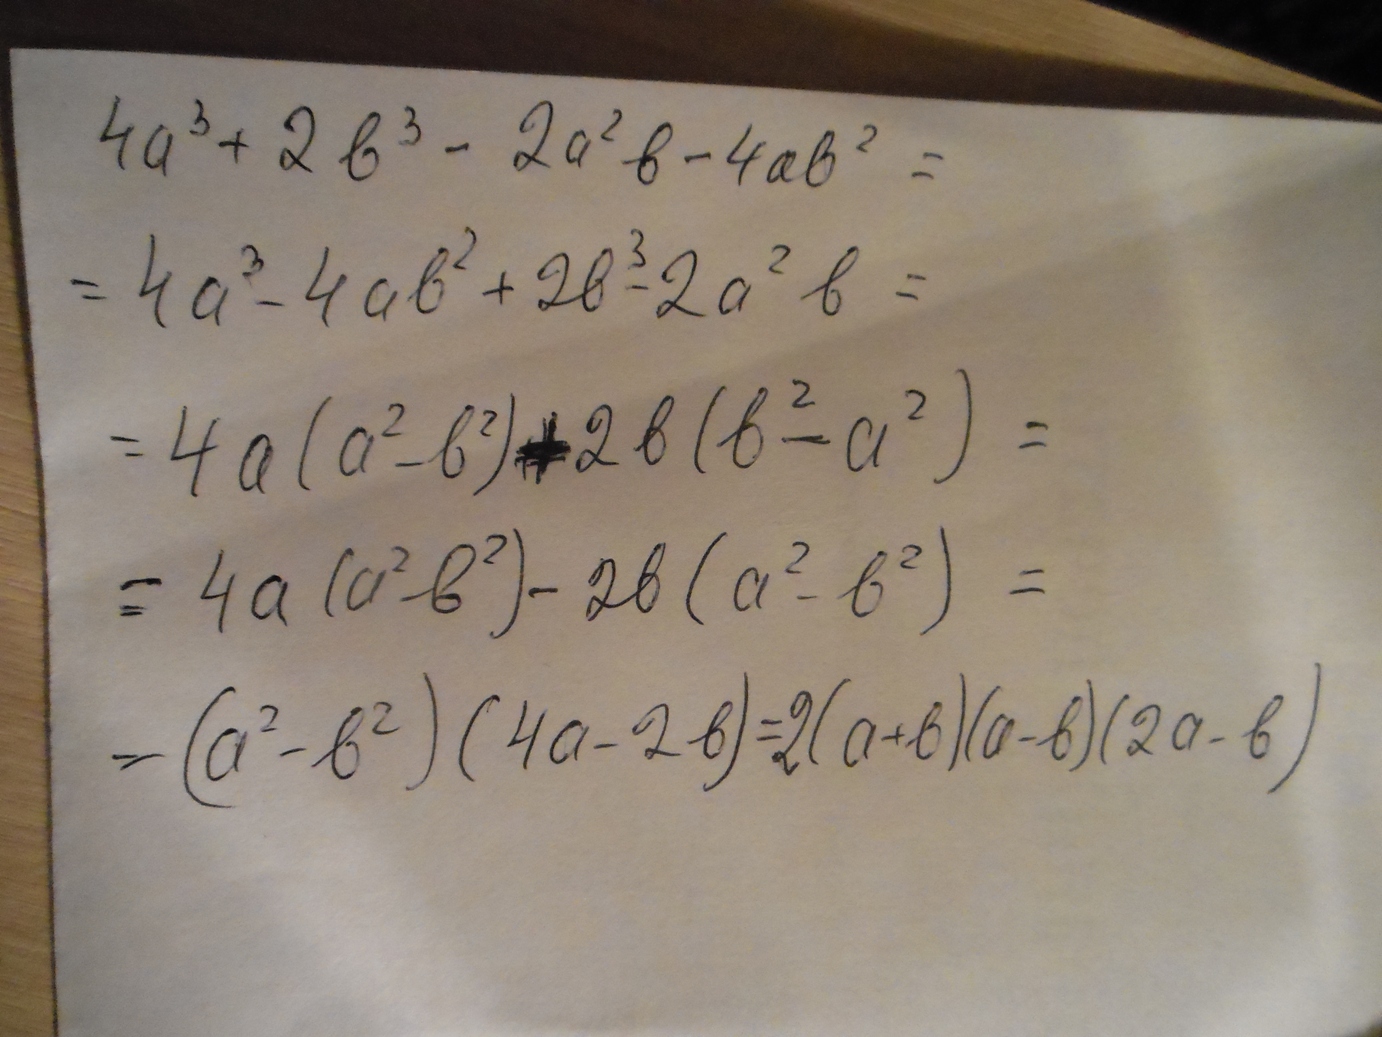 Х 2 9 разложите. Разложите на множители(а+2b) (2b-a)+(a+3b) в квадрате. Разложите на множители a+b+a2-b2. A2-b2 разложить на множители. Разложите на множители:а^2-b^2-2b+2a.